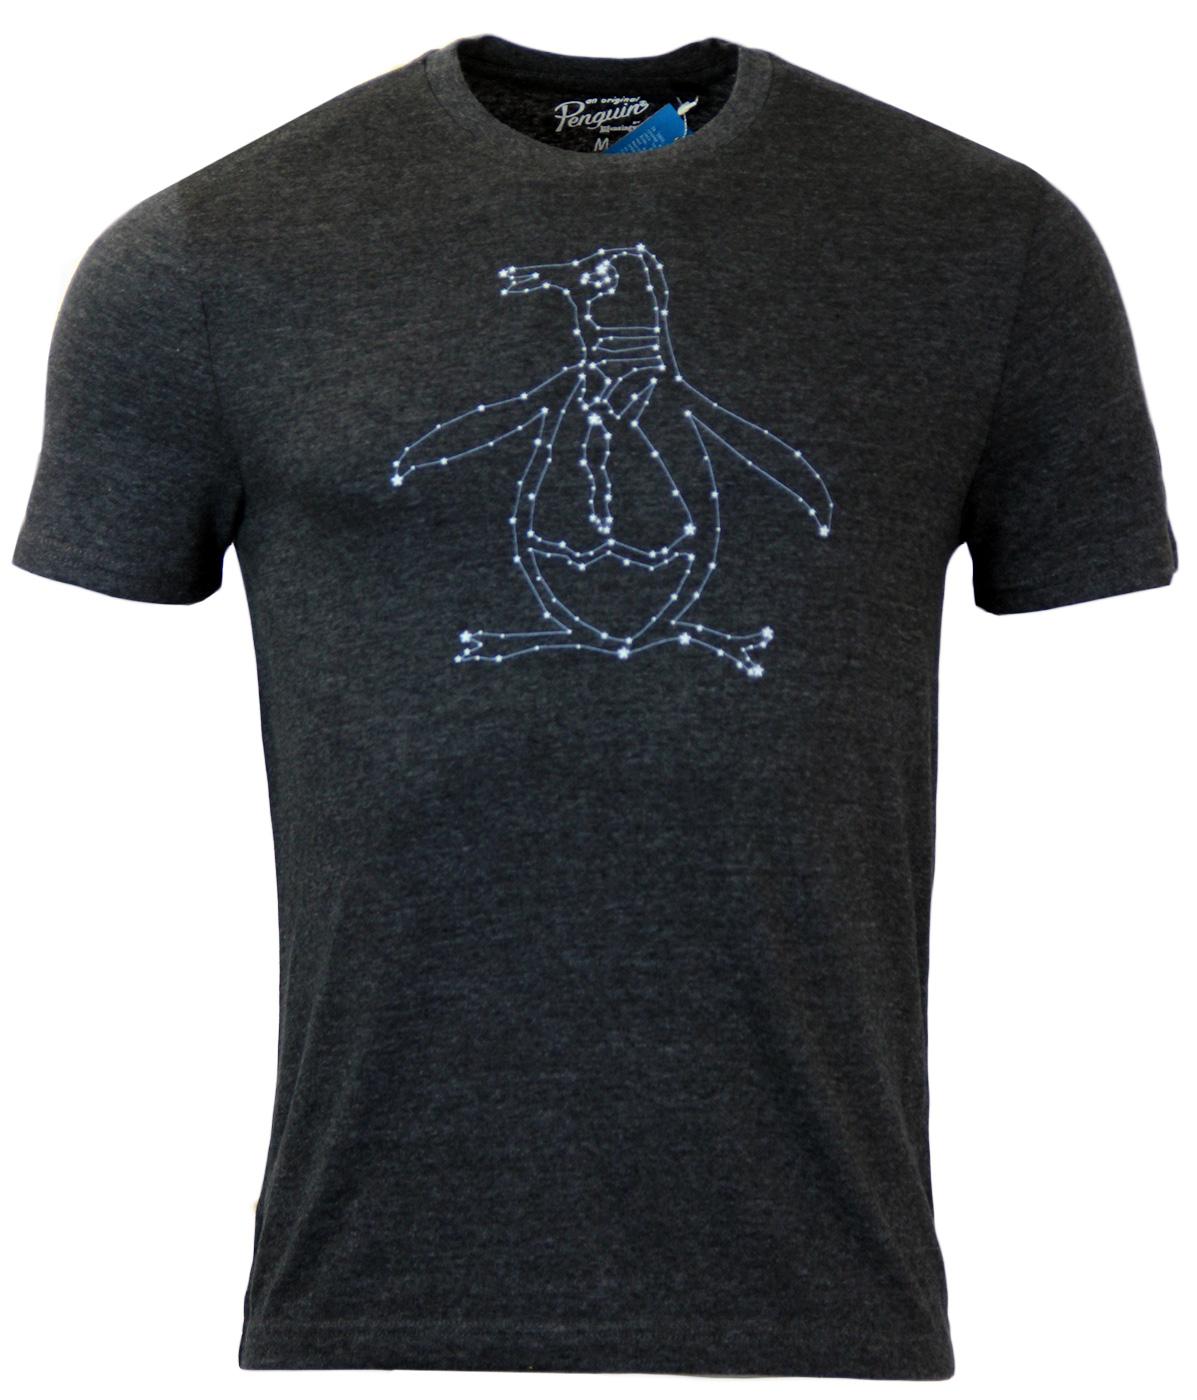 Constellation Pete ORIGINAL PENGUIN Retro T-Shirt